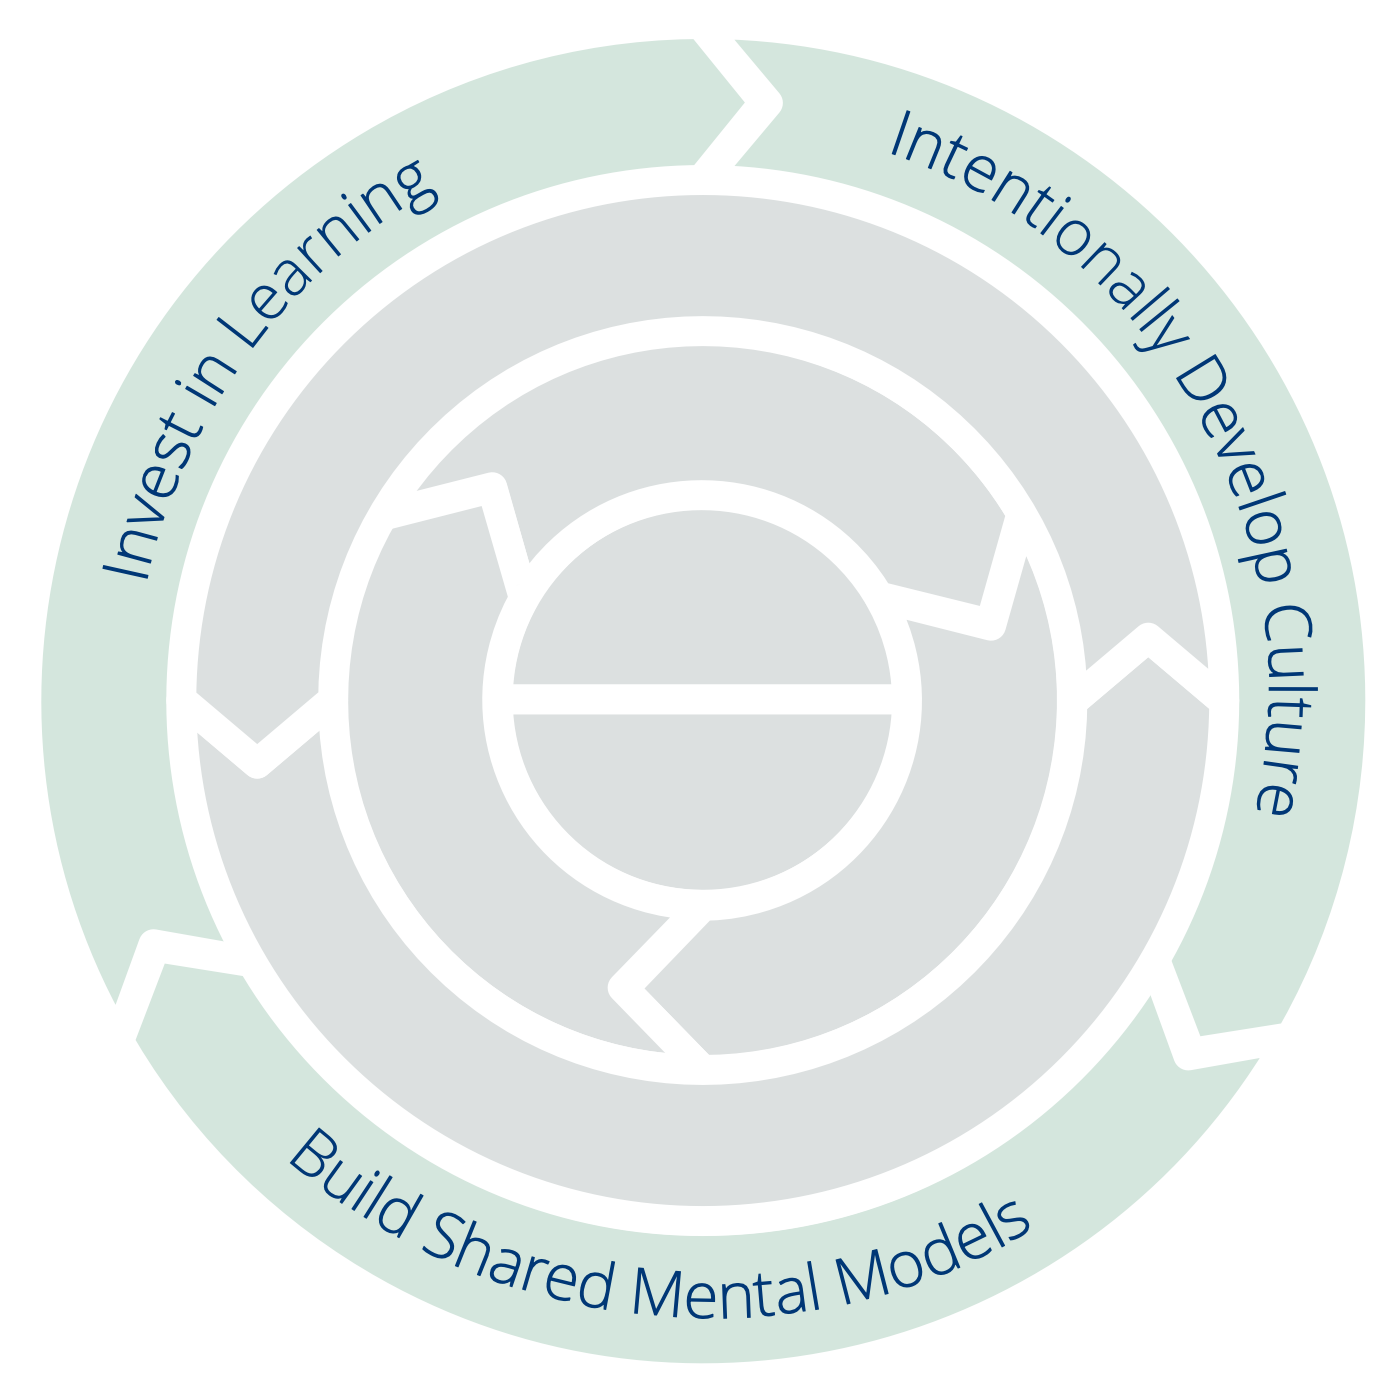 Tre principer för Transformation: Satsa på lärande – Utveckla kulturen medvetet – Bygg gemensamma mentala modeller